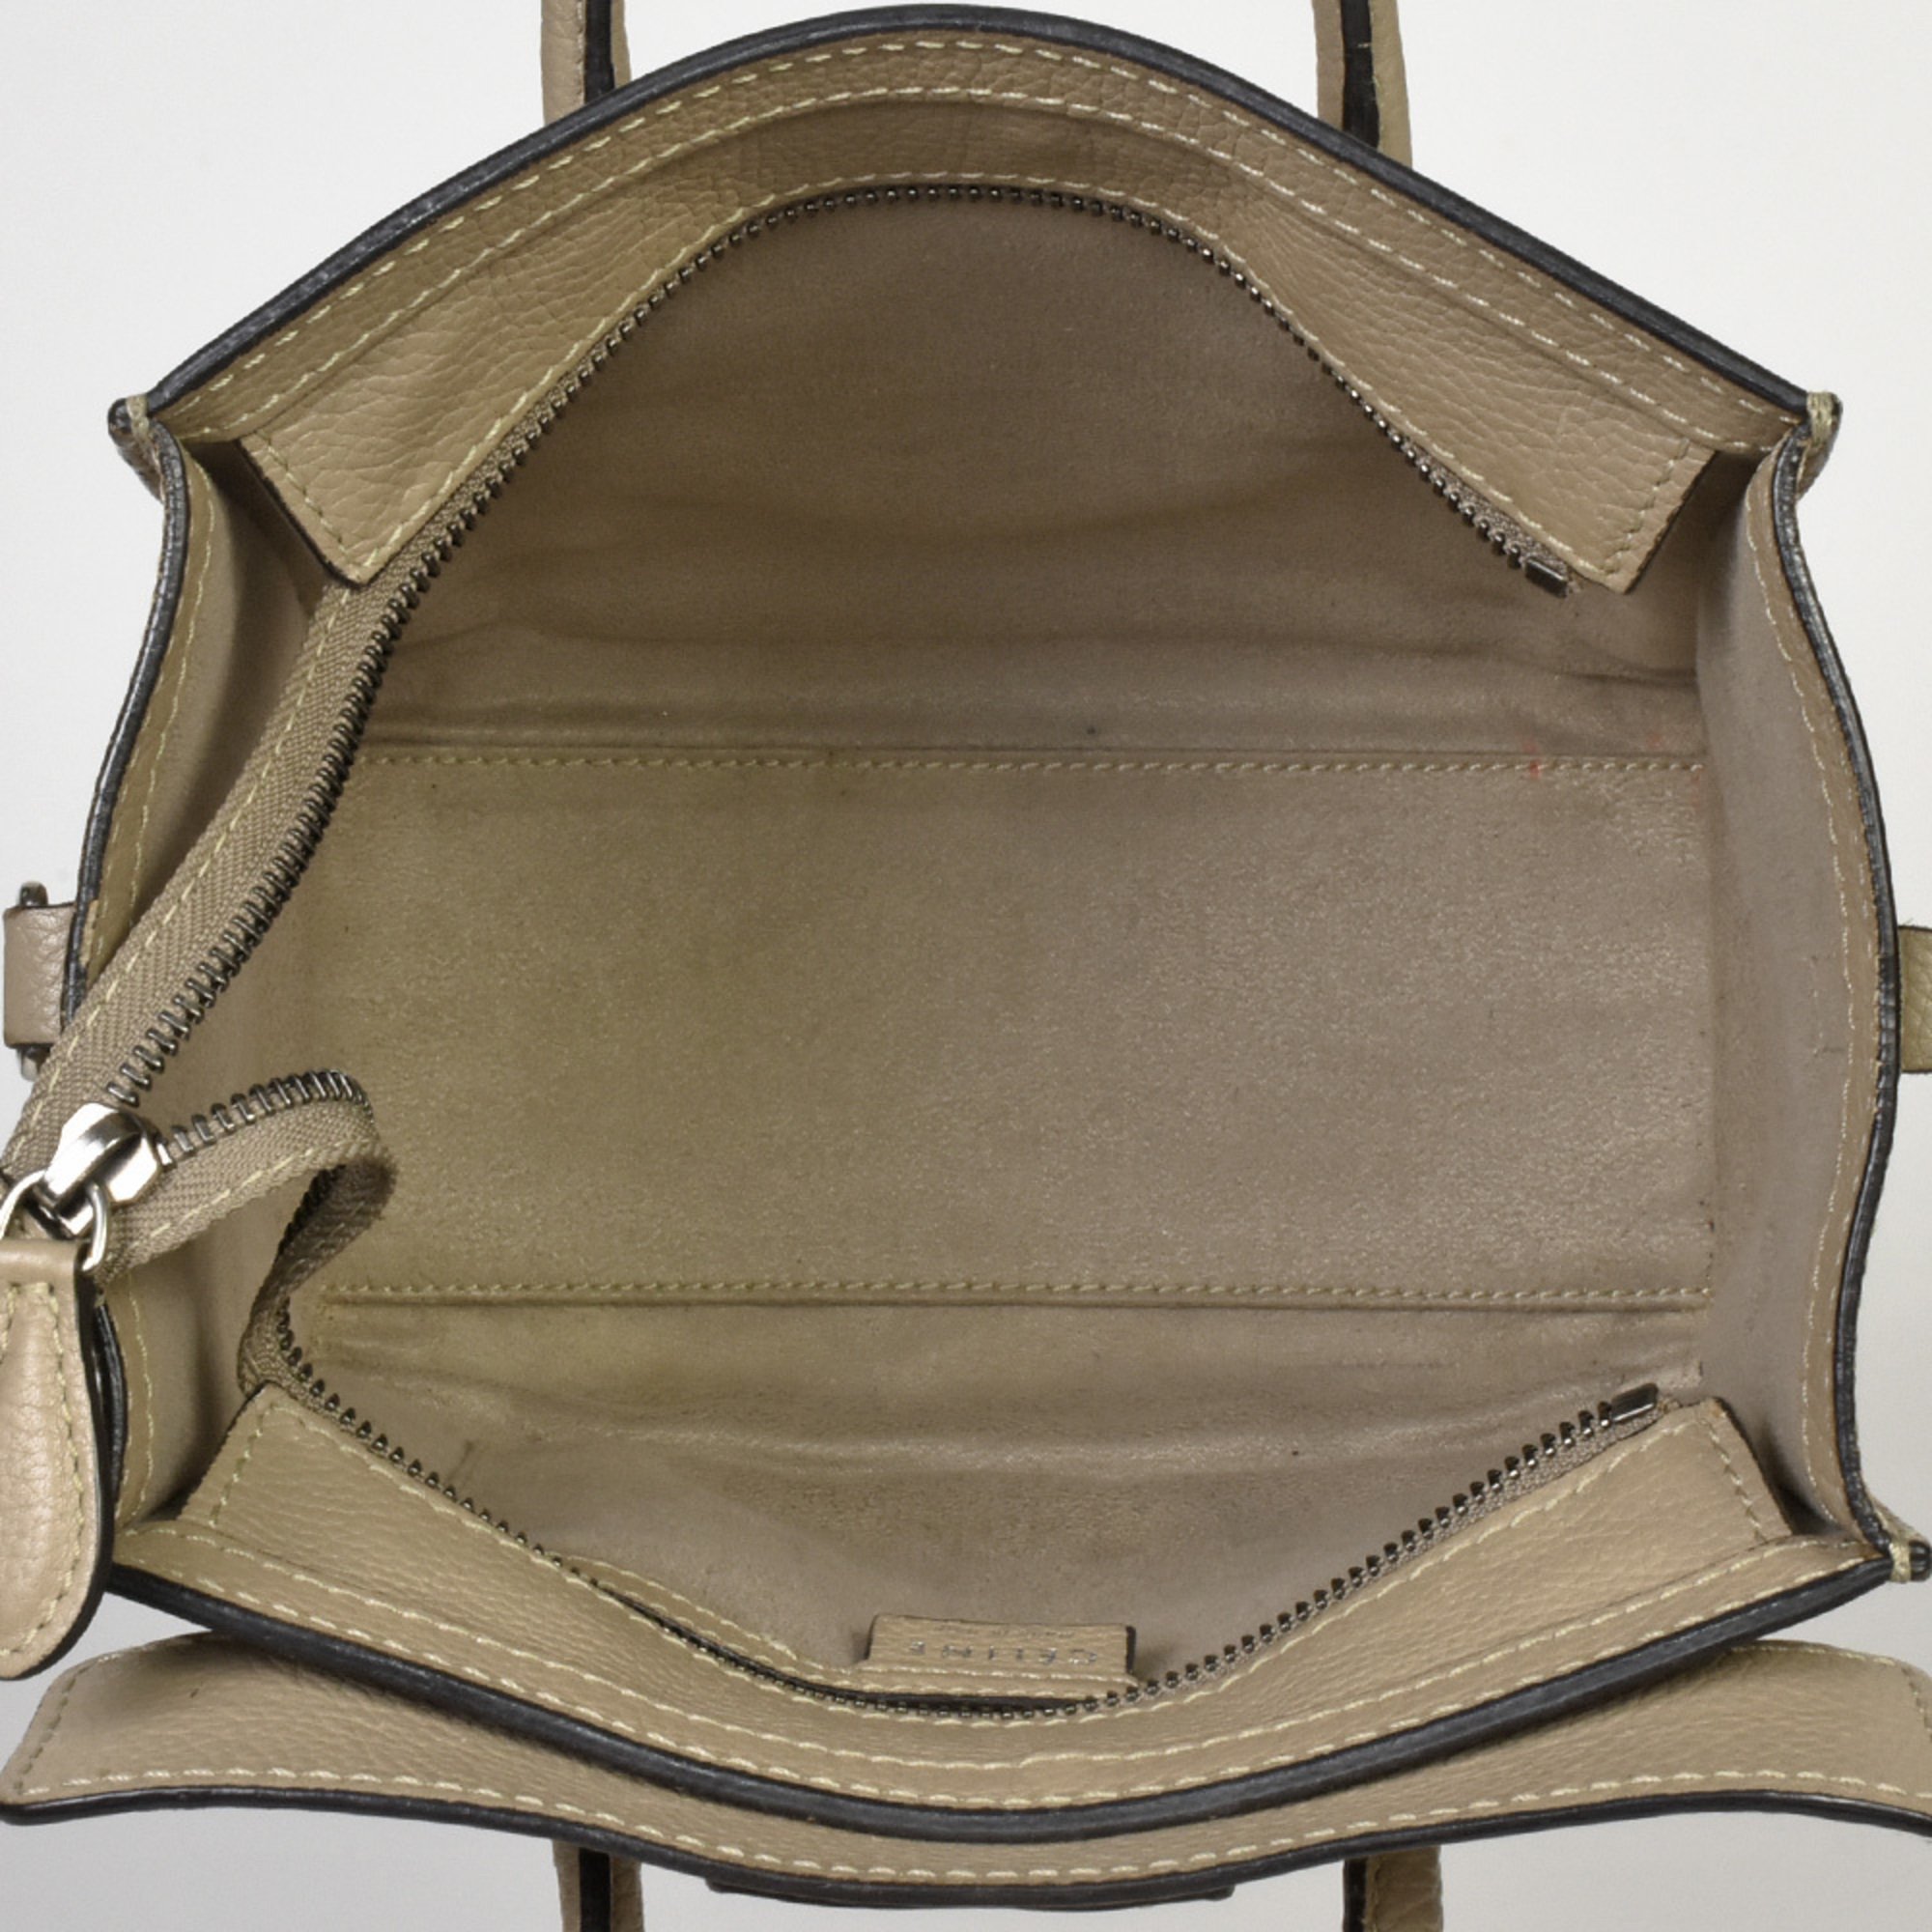 CELINE Luggage Nano Shopper Shoulder Bag Calfskin 168243 Beige Handbag ITONB4EMMCX4